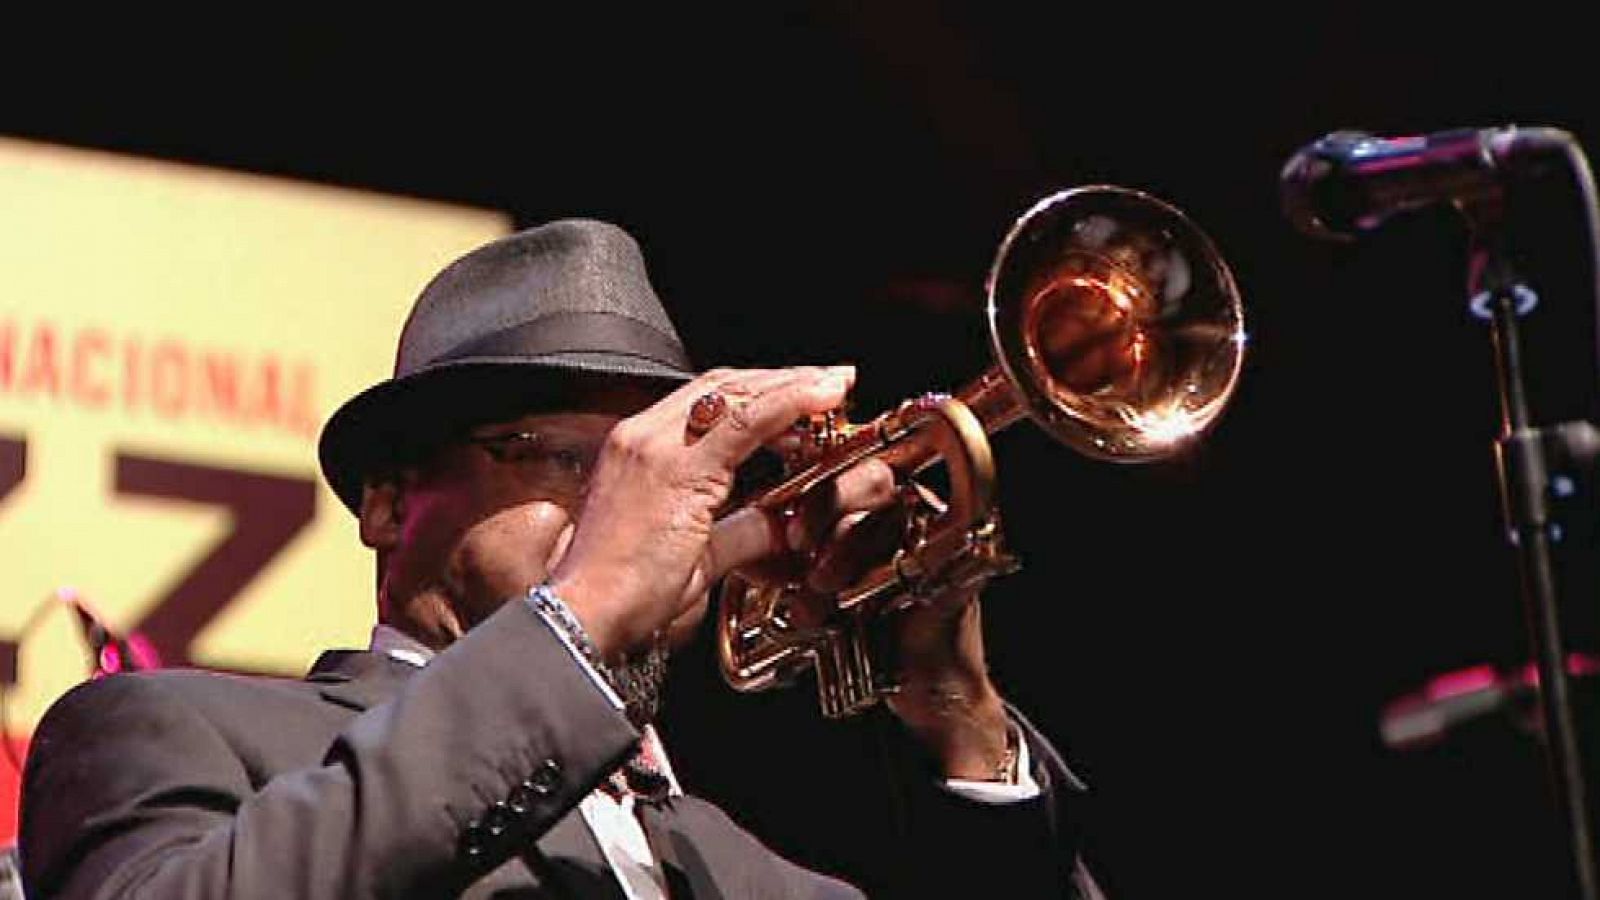 Festivales de verano - 19º Jazz San Javier: Actuación de James Brown Original Band con Martha High